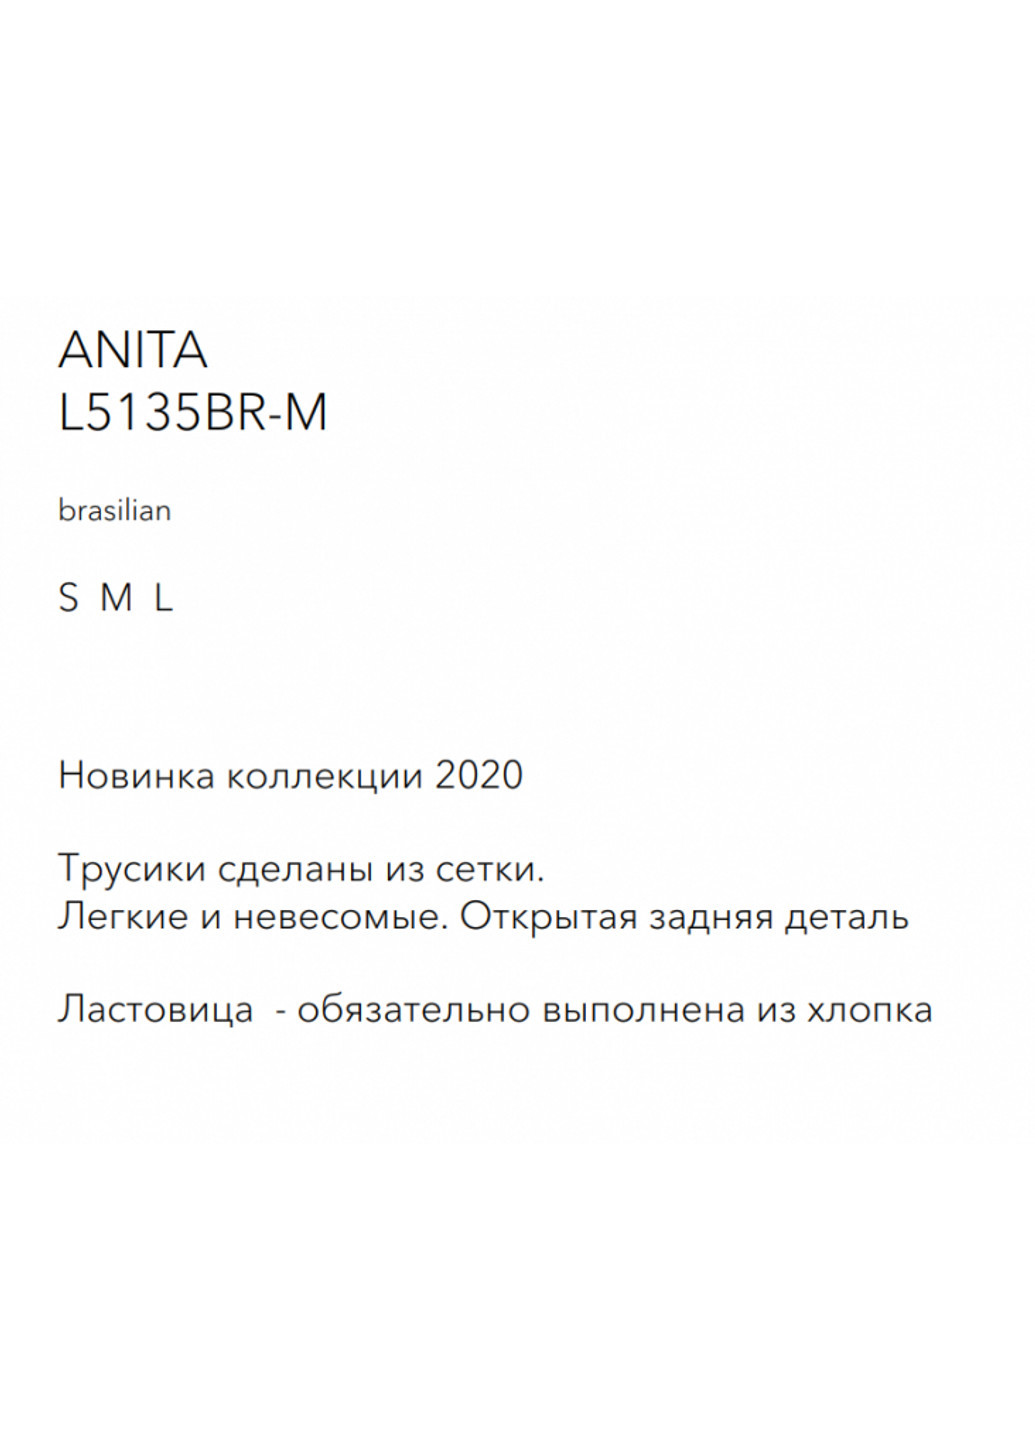 Трусики брифы с микросеткой белые L5135BR-M Anita Luna (251826578)